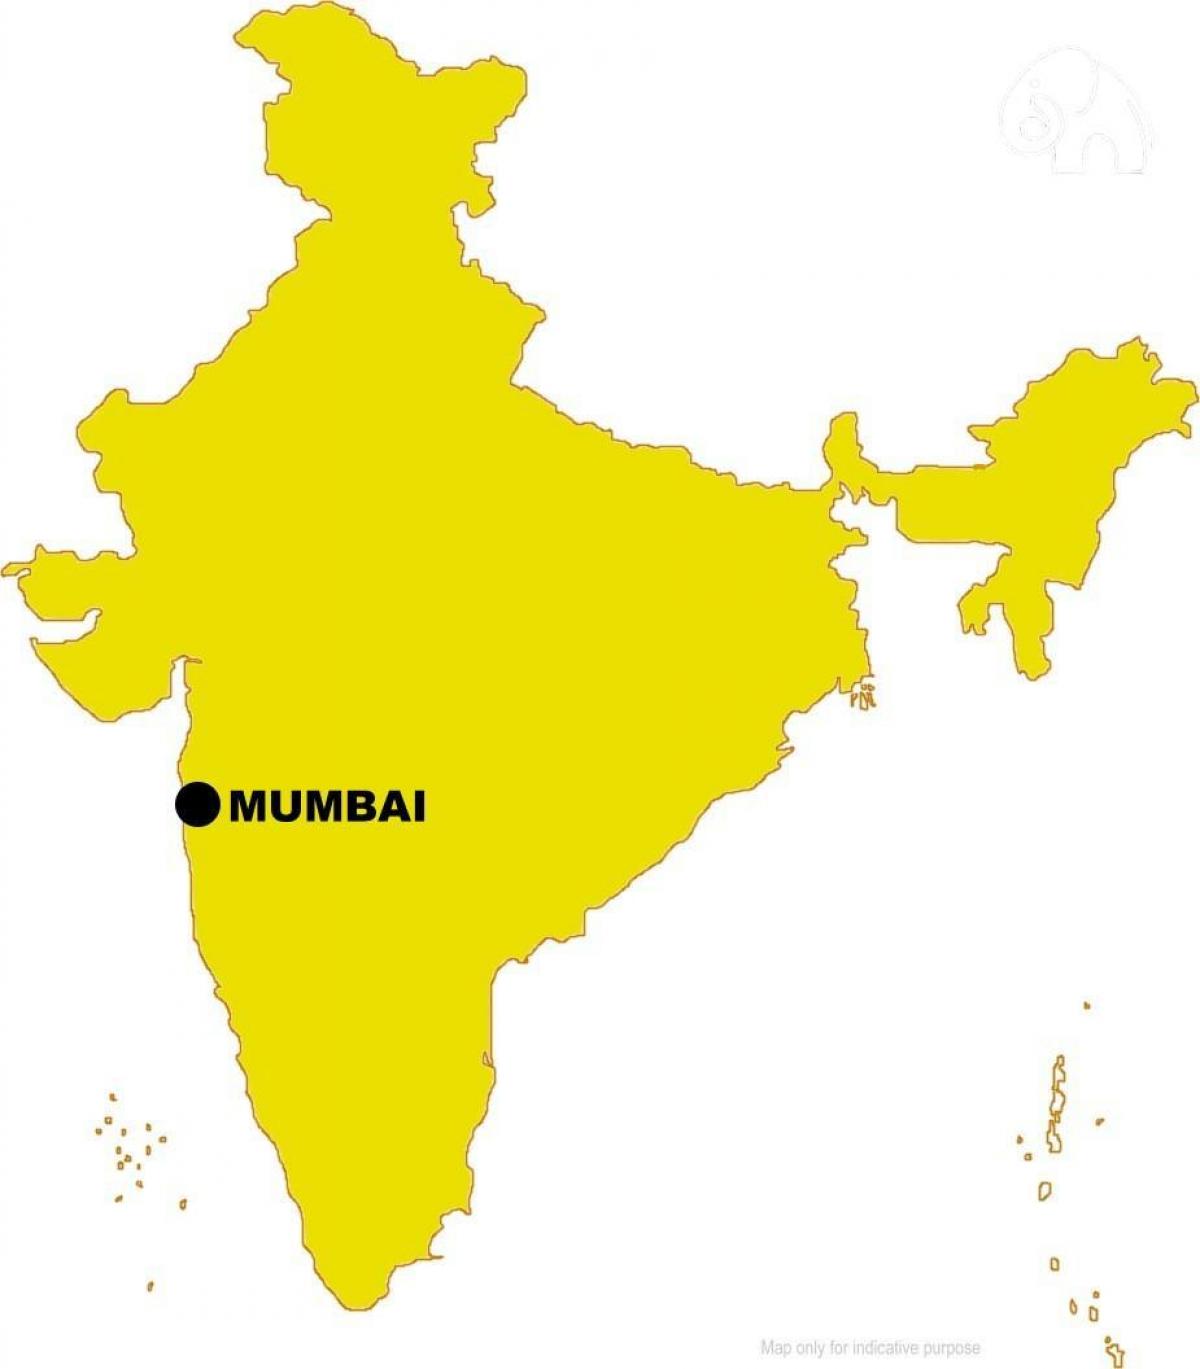 Mumbai u mapu